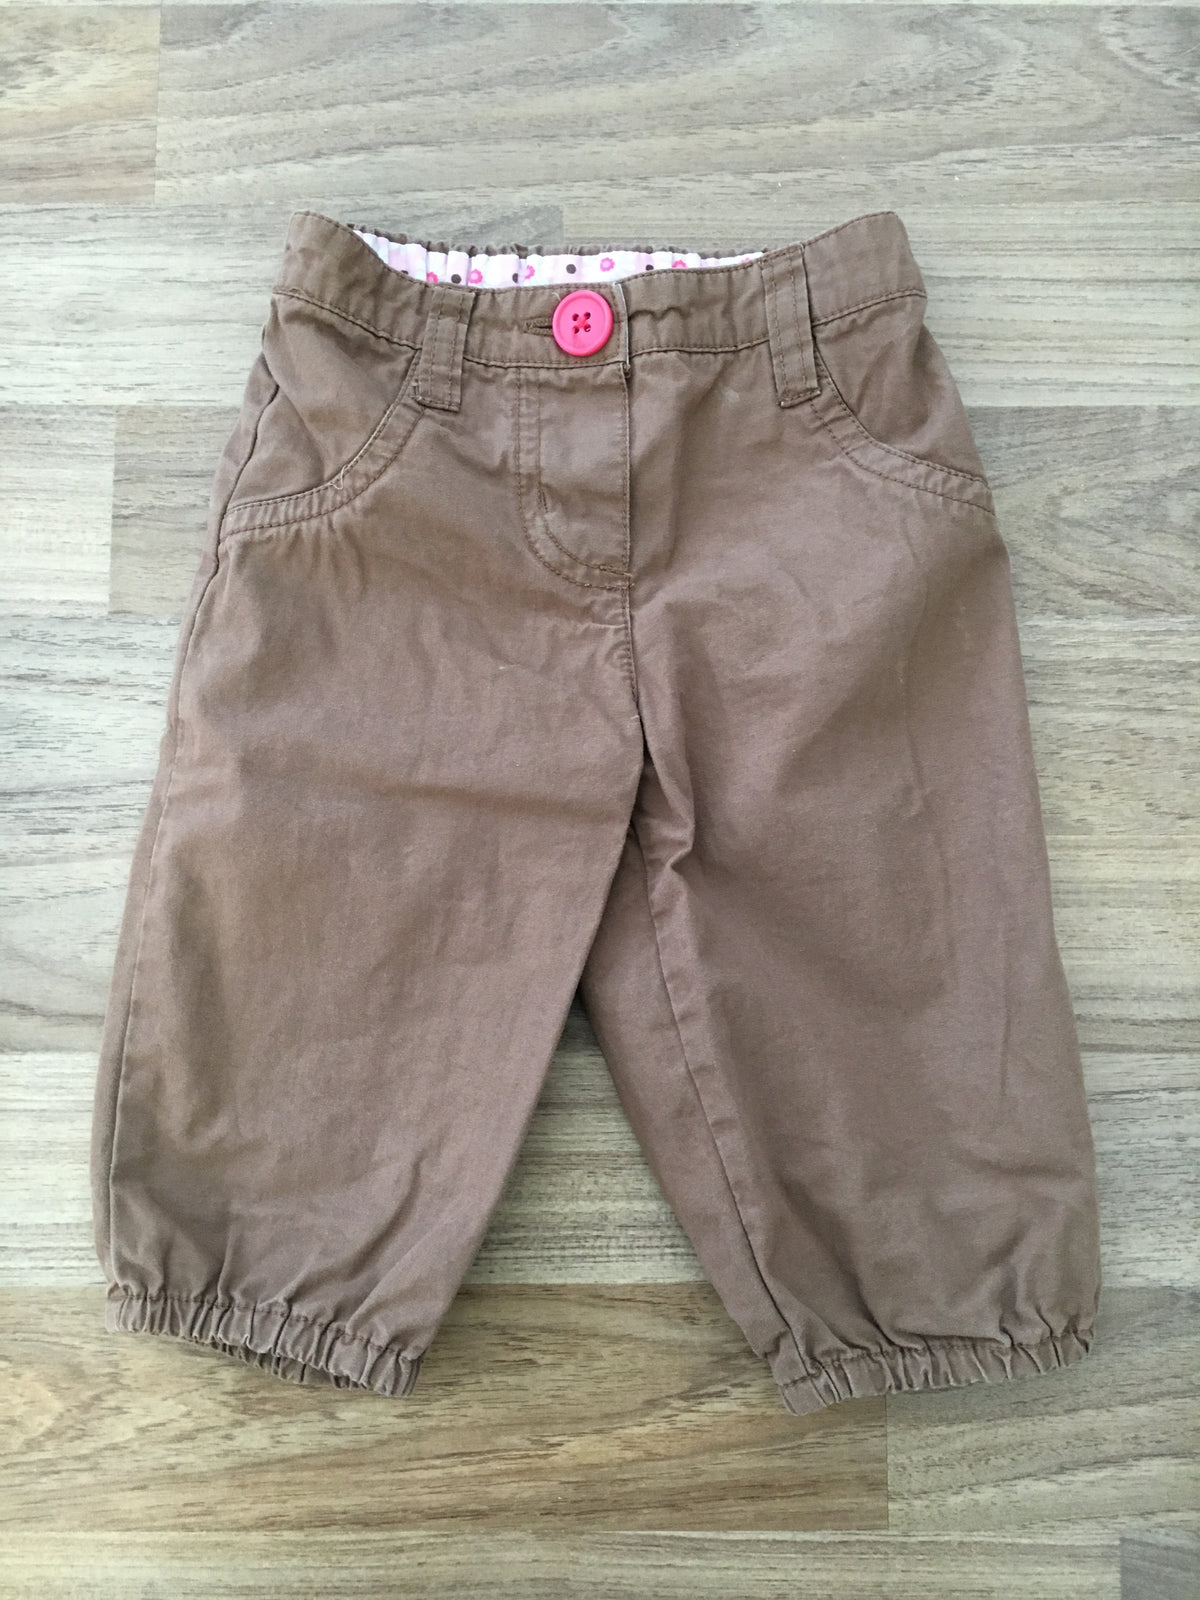 Pants (Girls Size 6M)